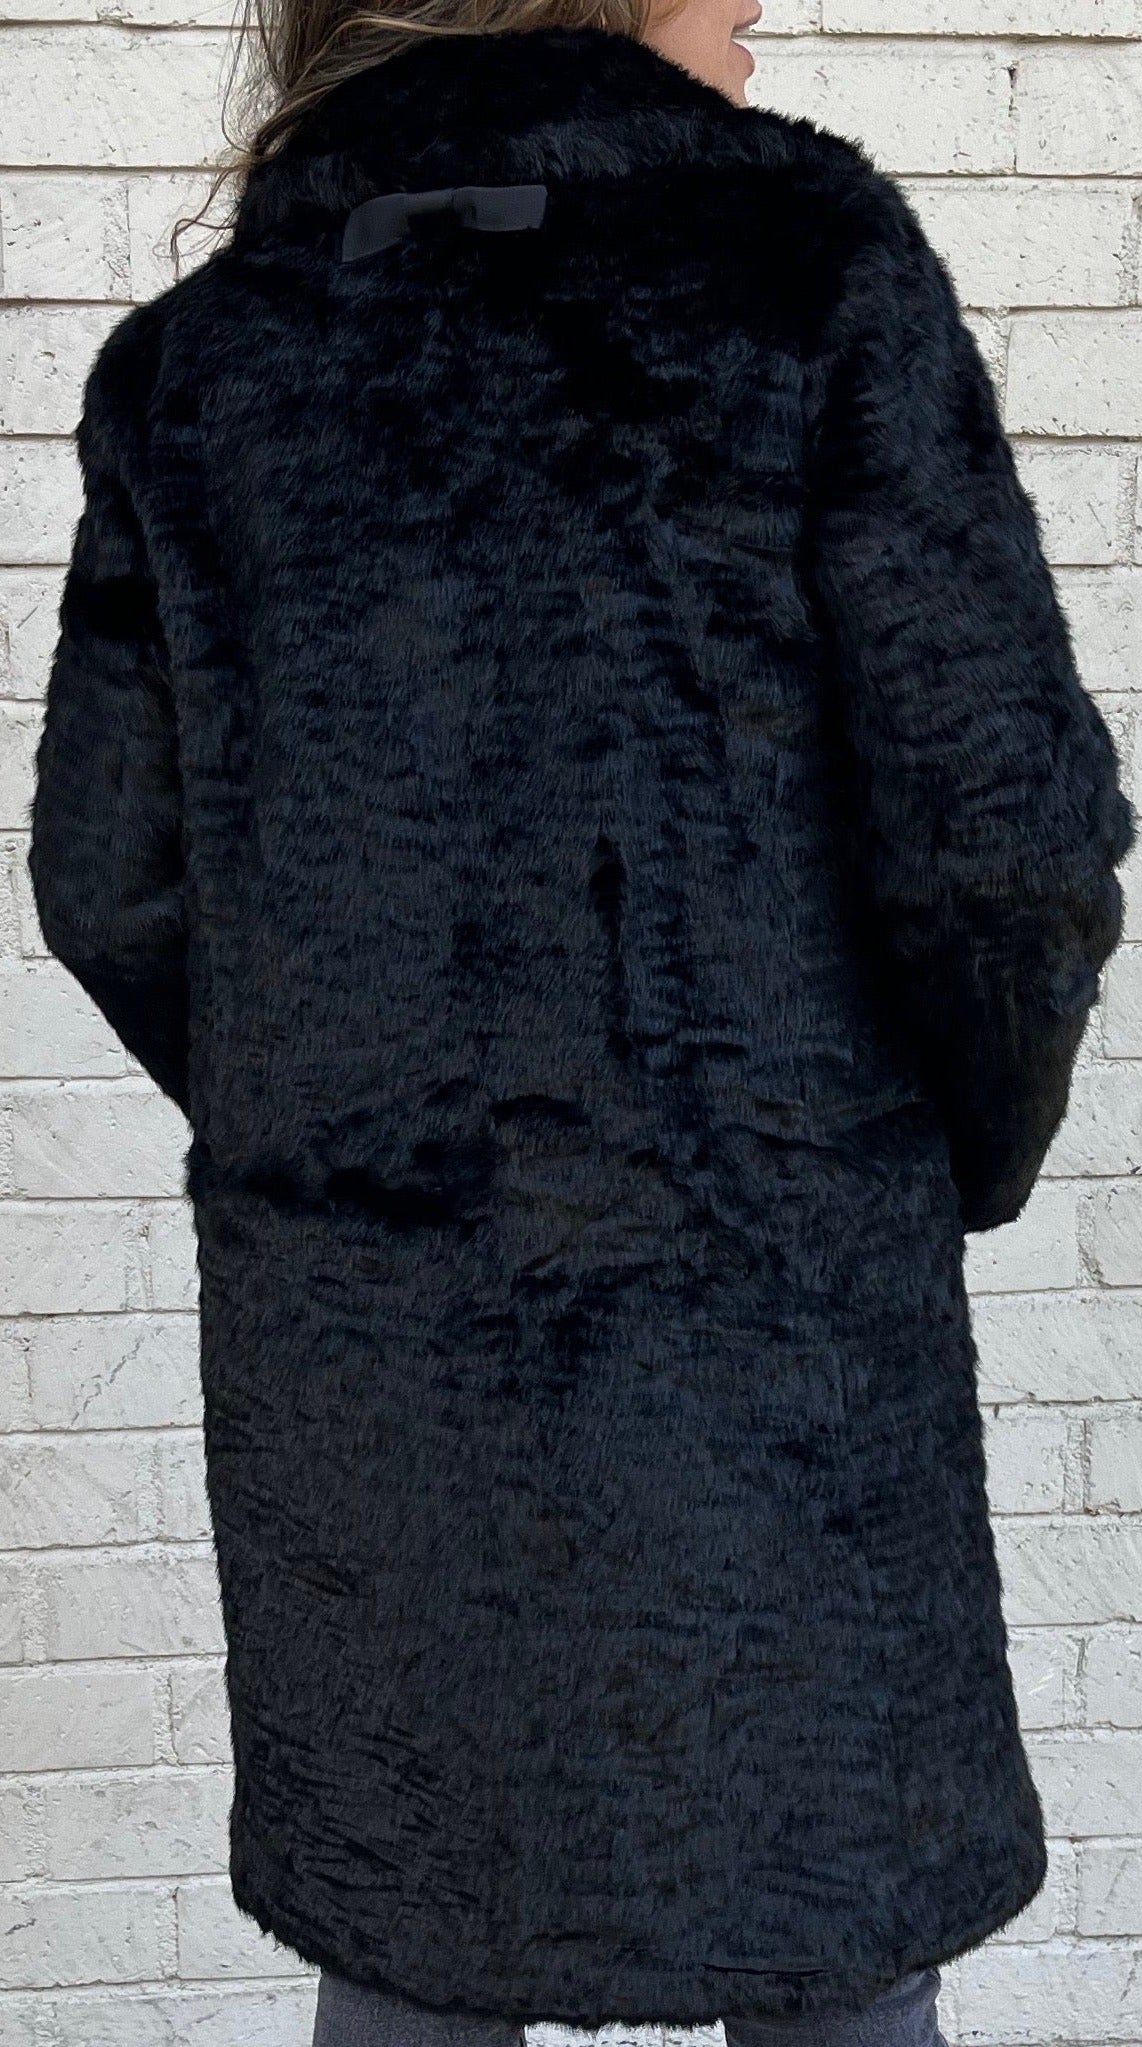 Kate Spade Faux Fur Winter Coat